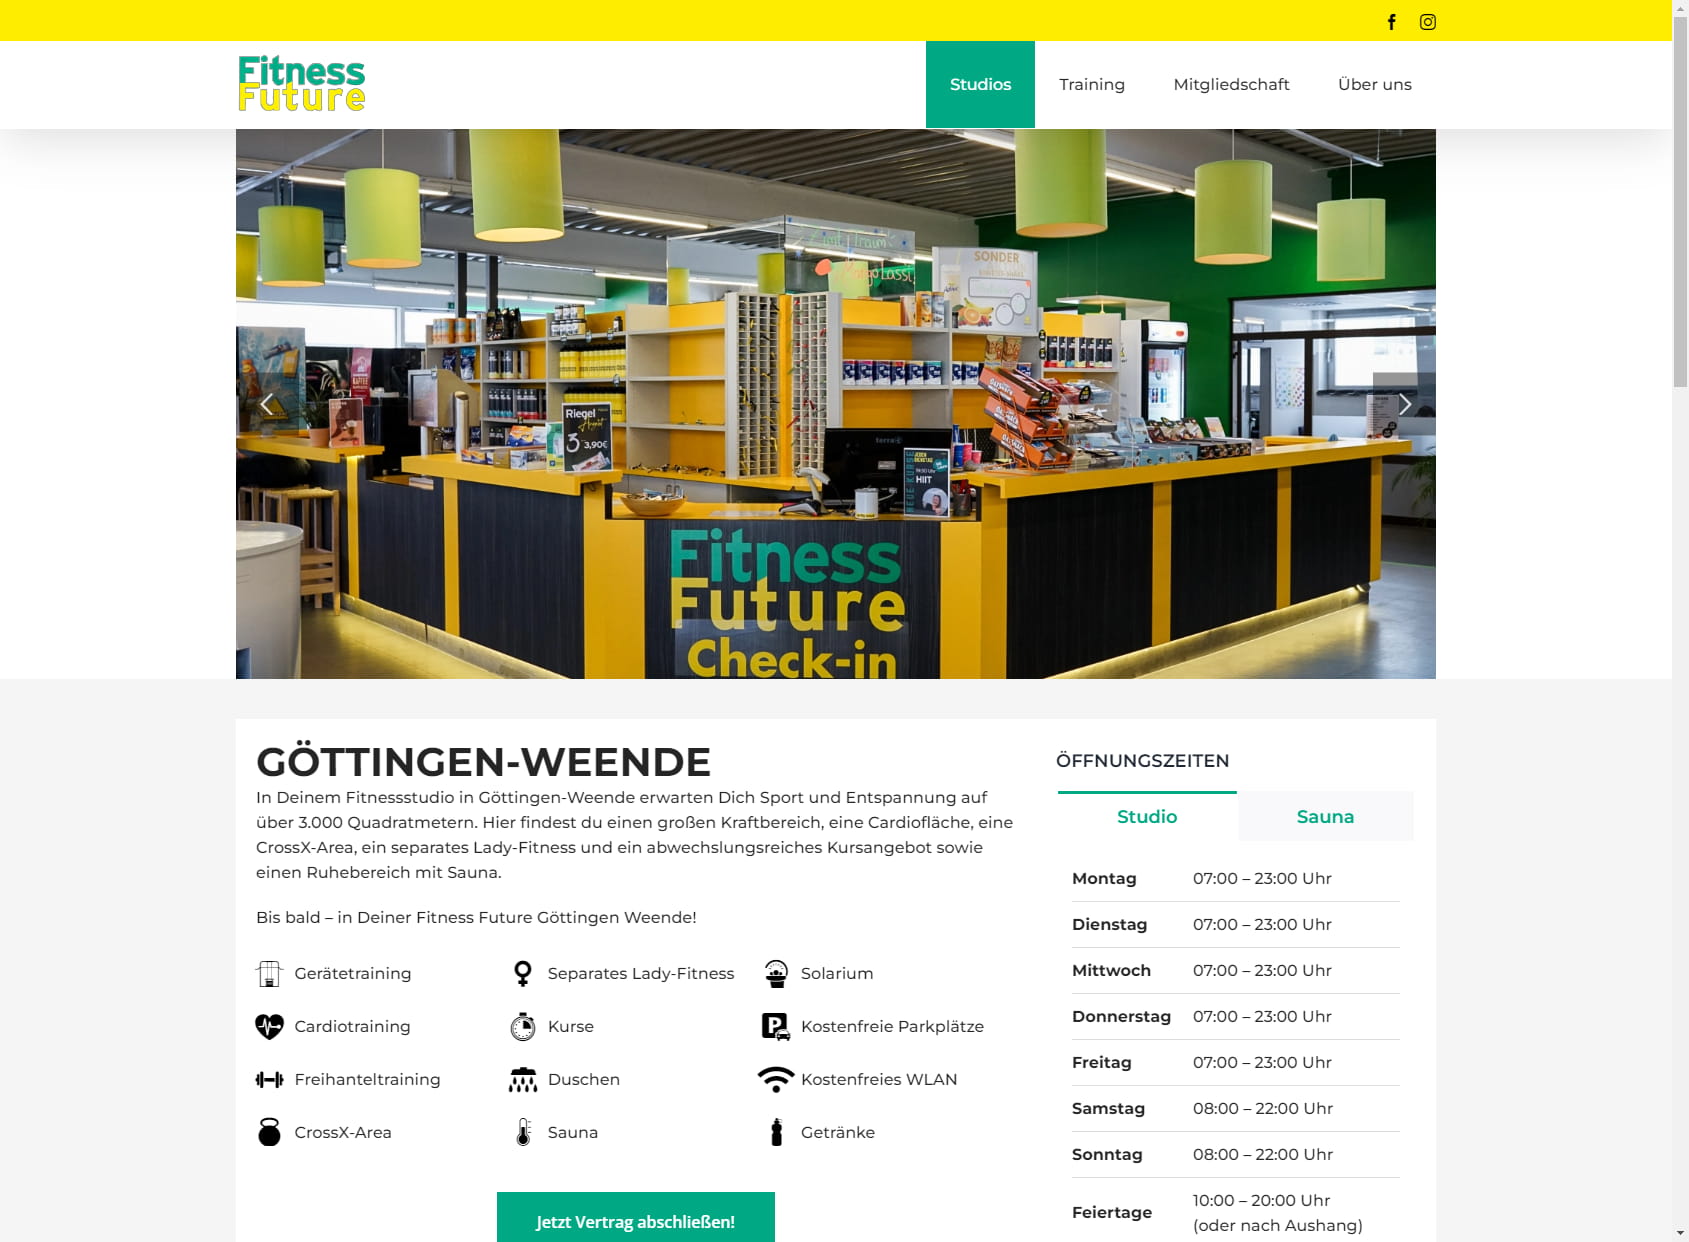 Fitness Future Göttingen-Weende